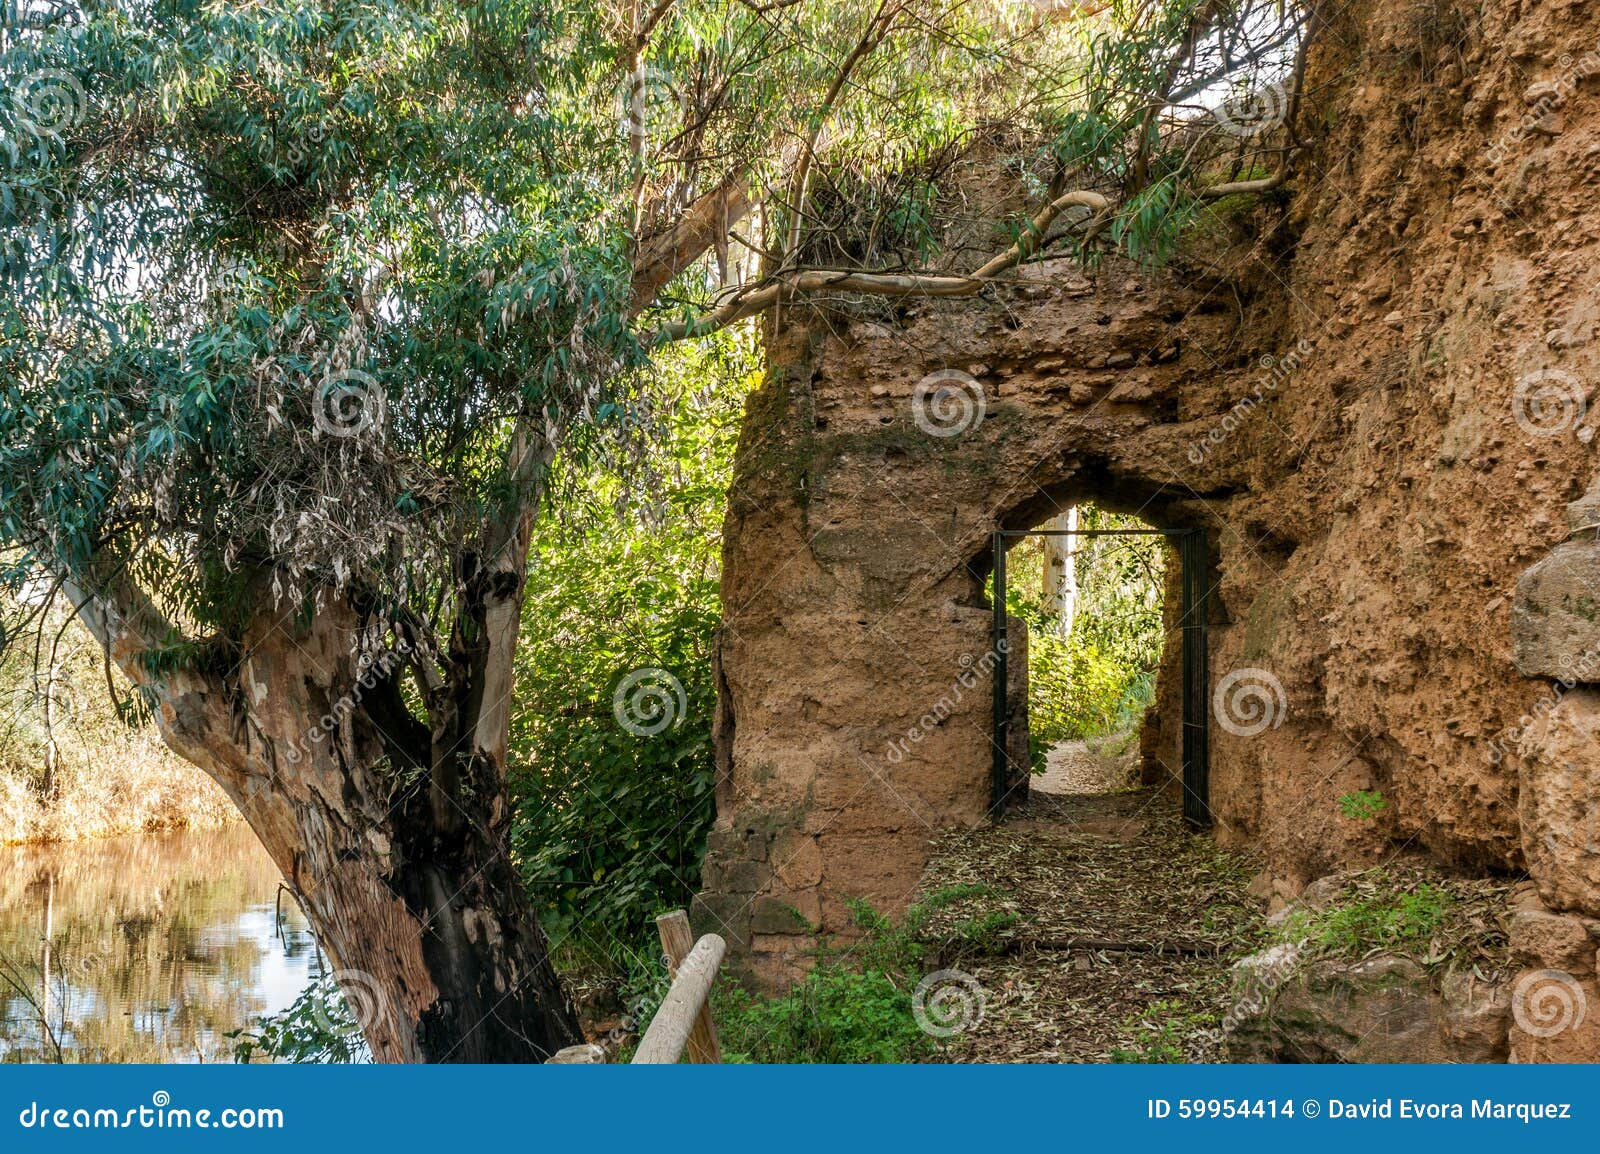 door inside the rampart of medieval stone that surrounds village of niebla, huelva, spain